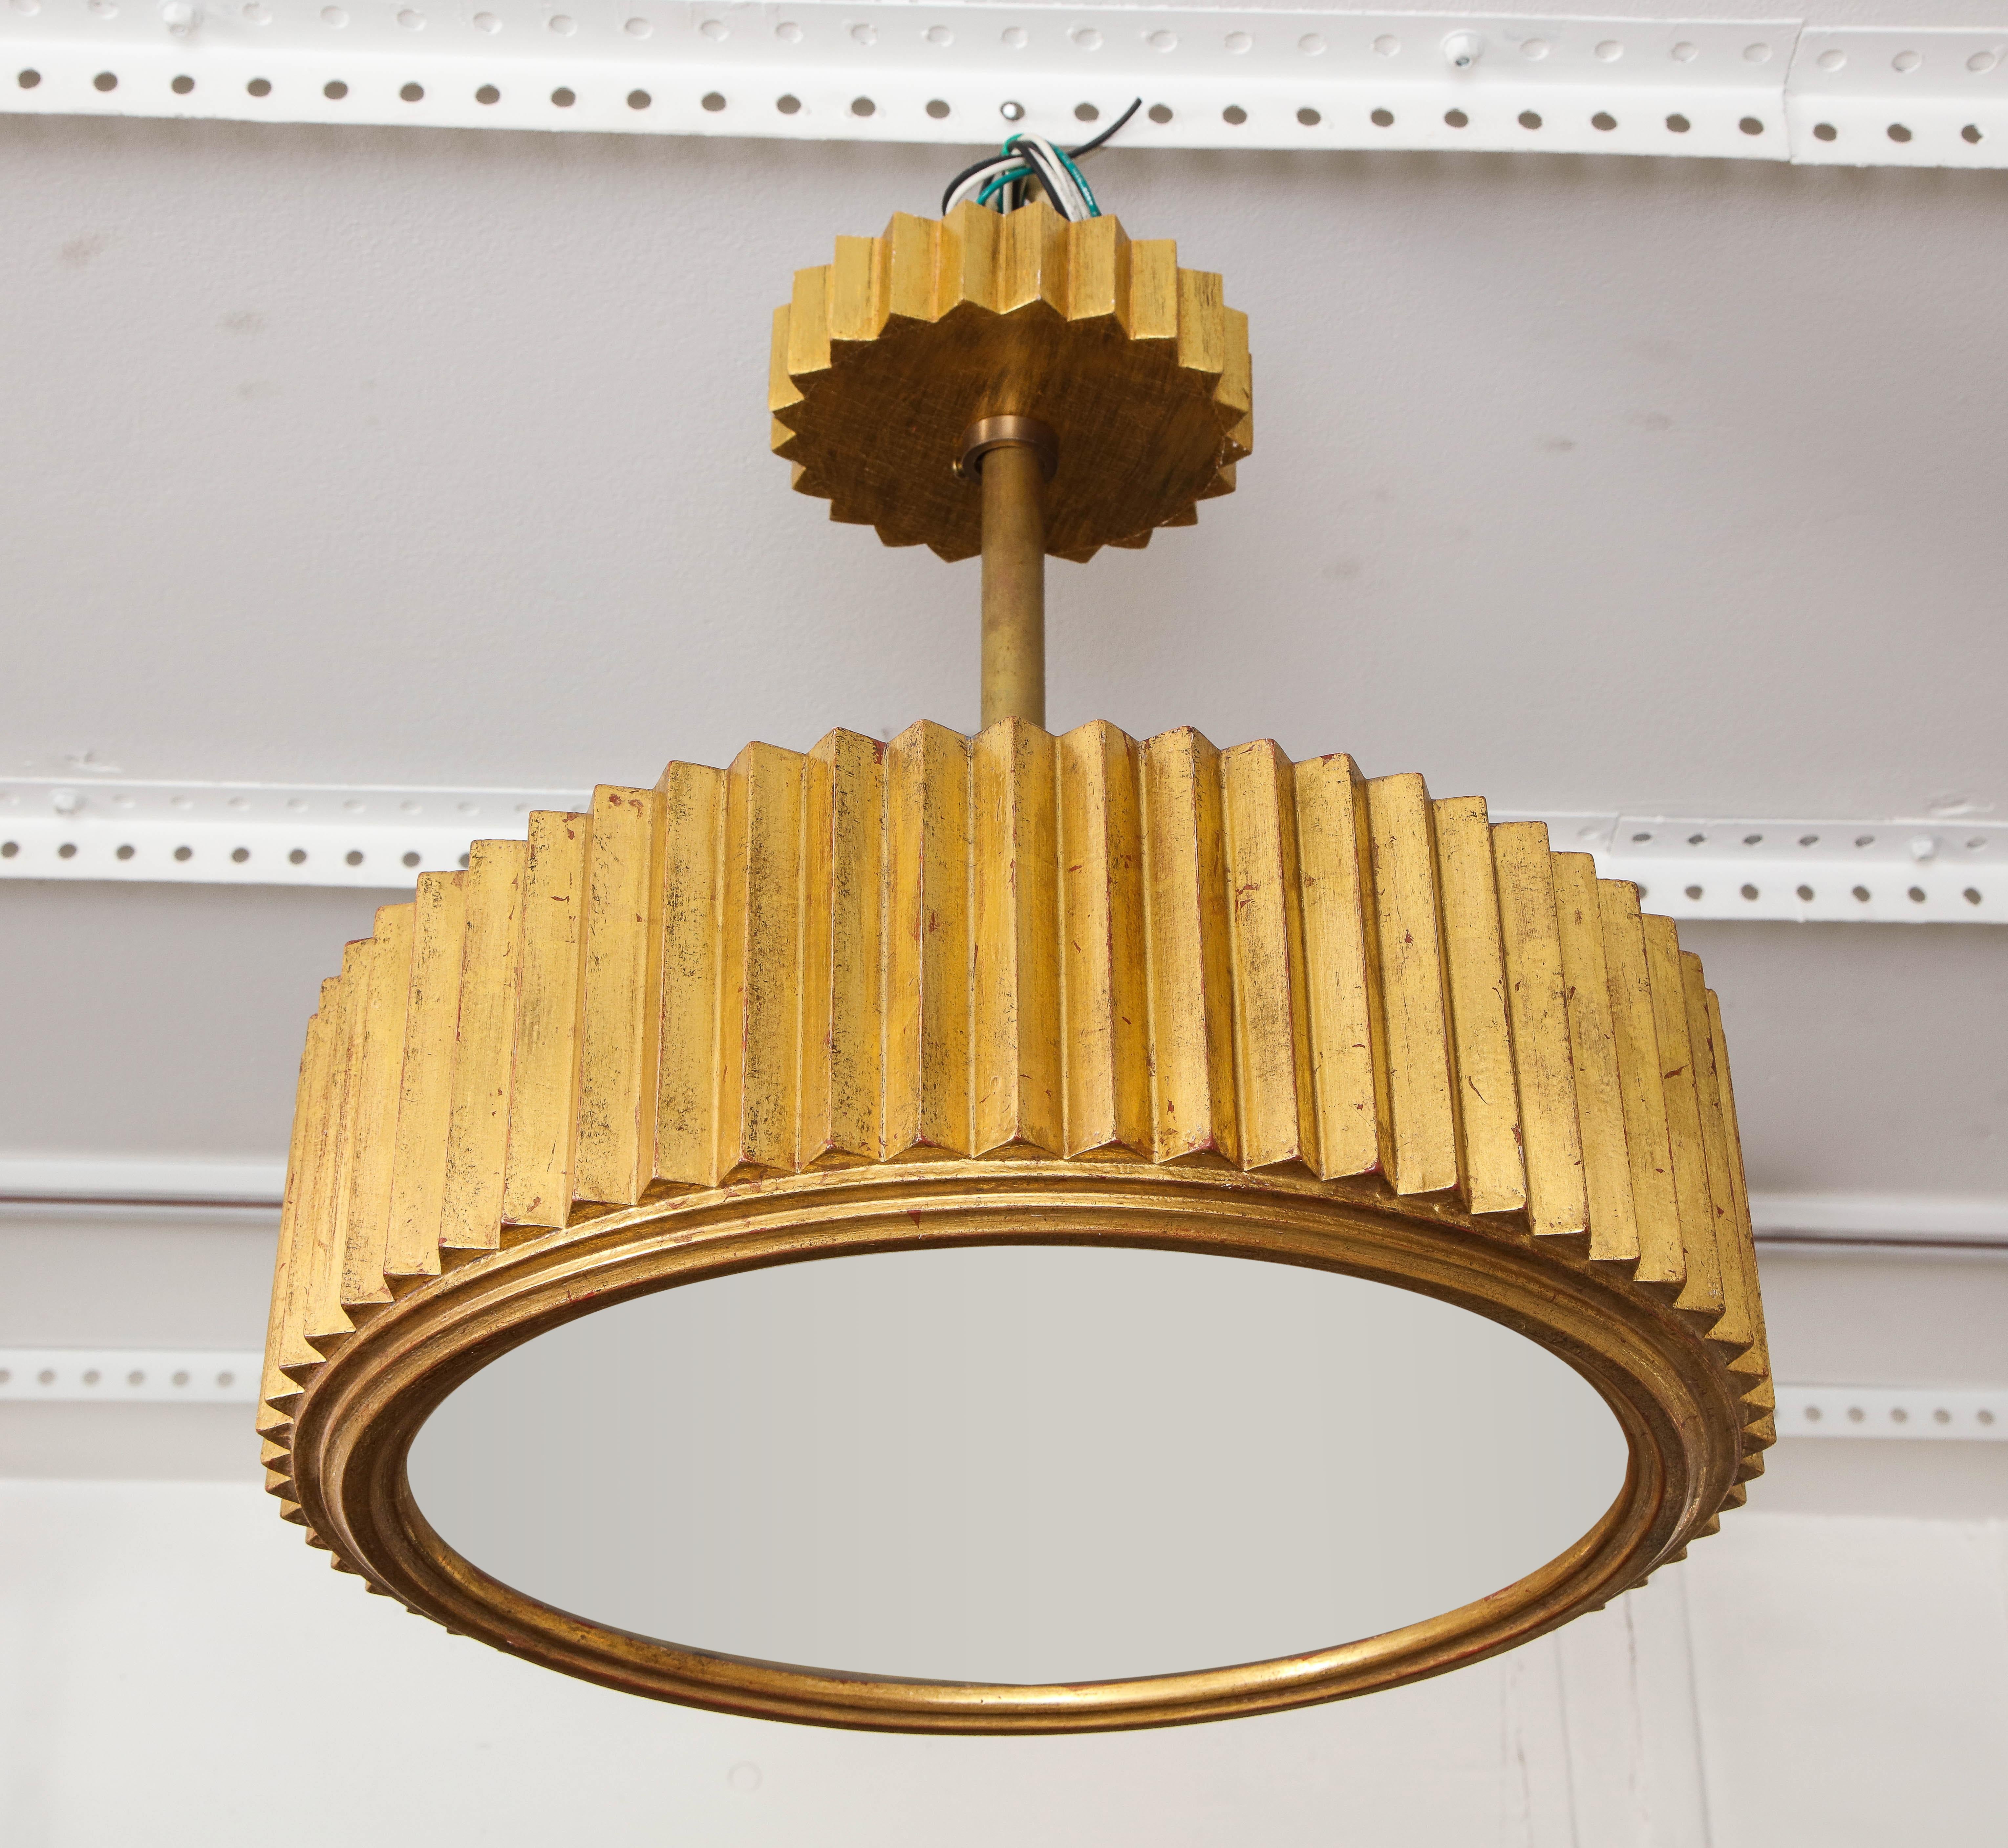 Luminaire en bois doré sculpté à la main dans le style Art Déco.
Ce luminaire peut être personnalisé selon vos spécifications avec une 
délai d'exécution de 8 à 10 semaines.